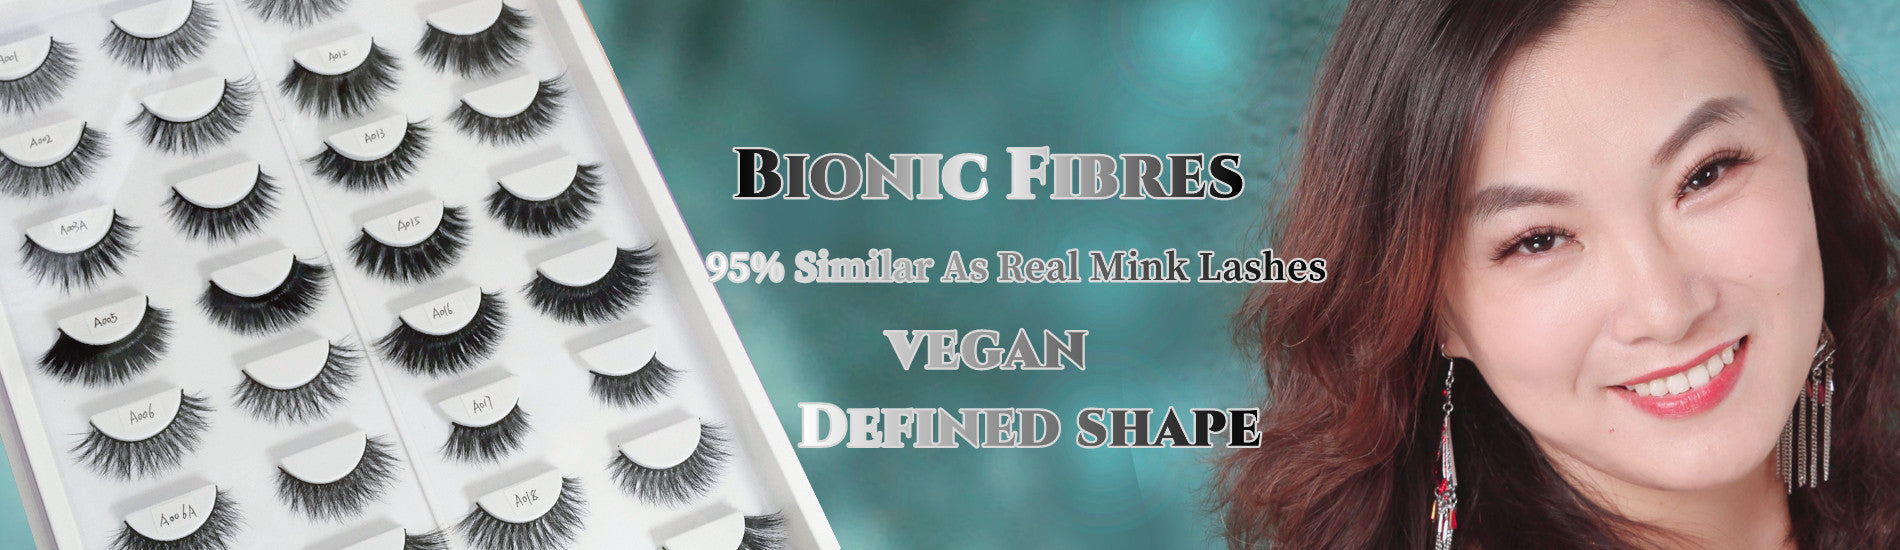 vegan hair eyelashes wholesale 